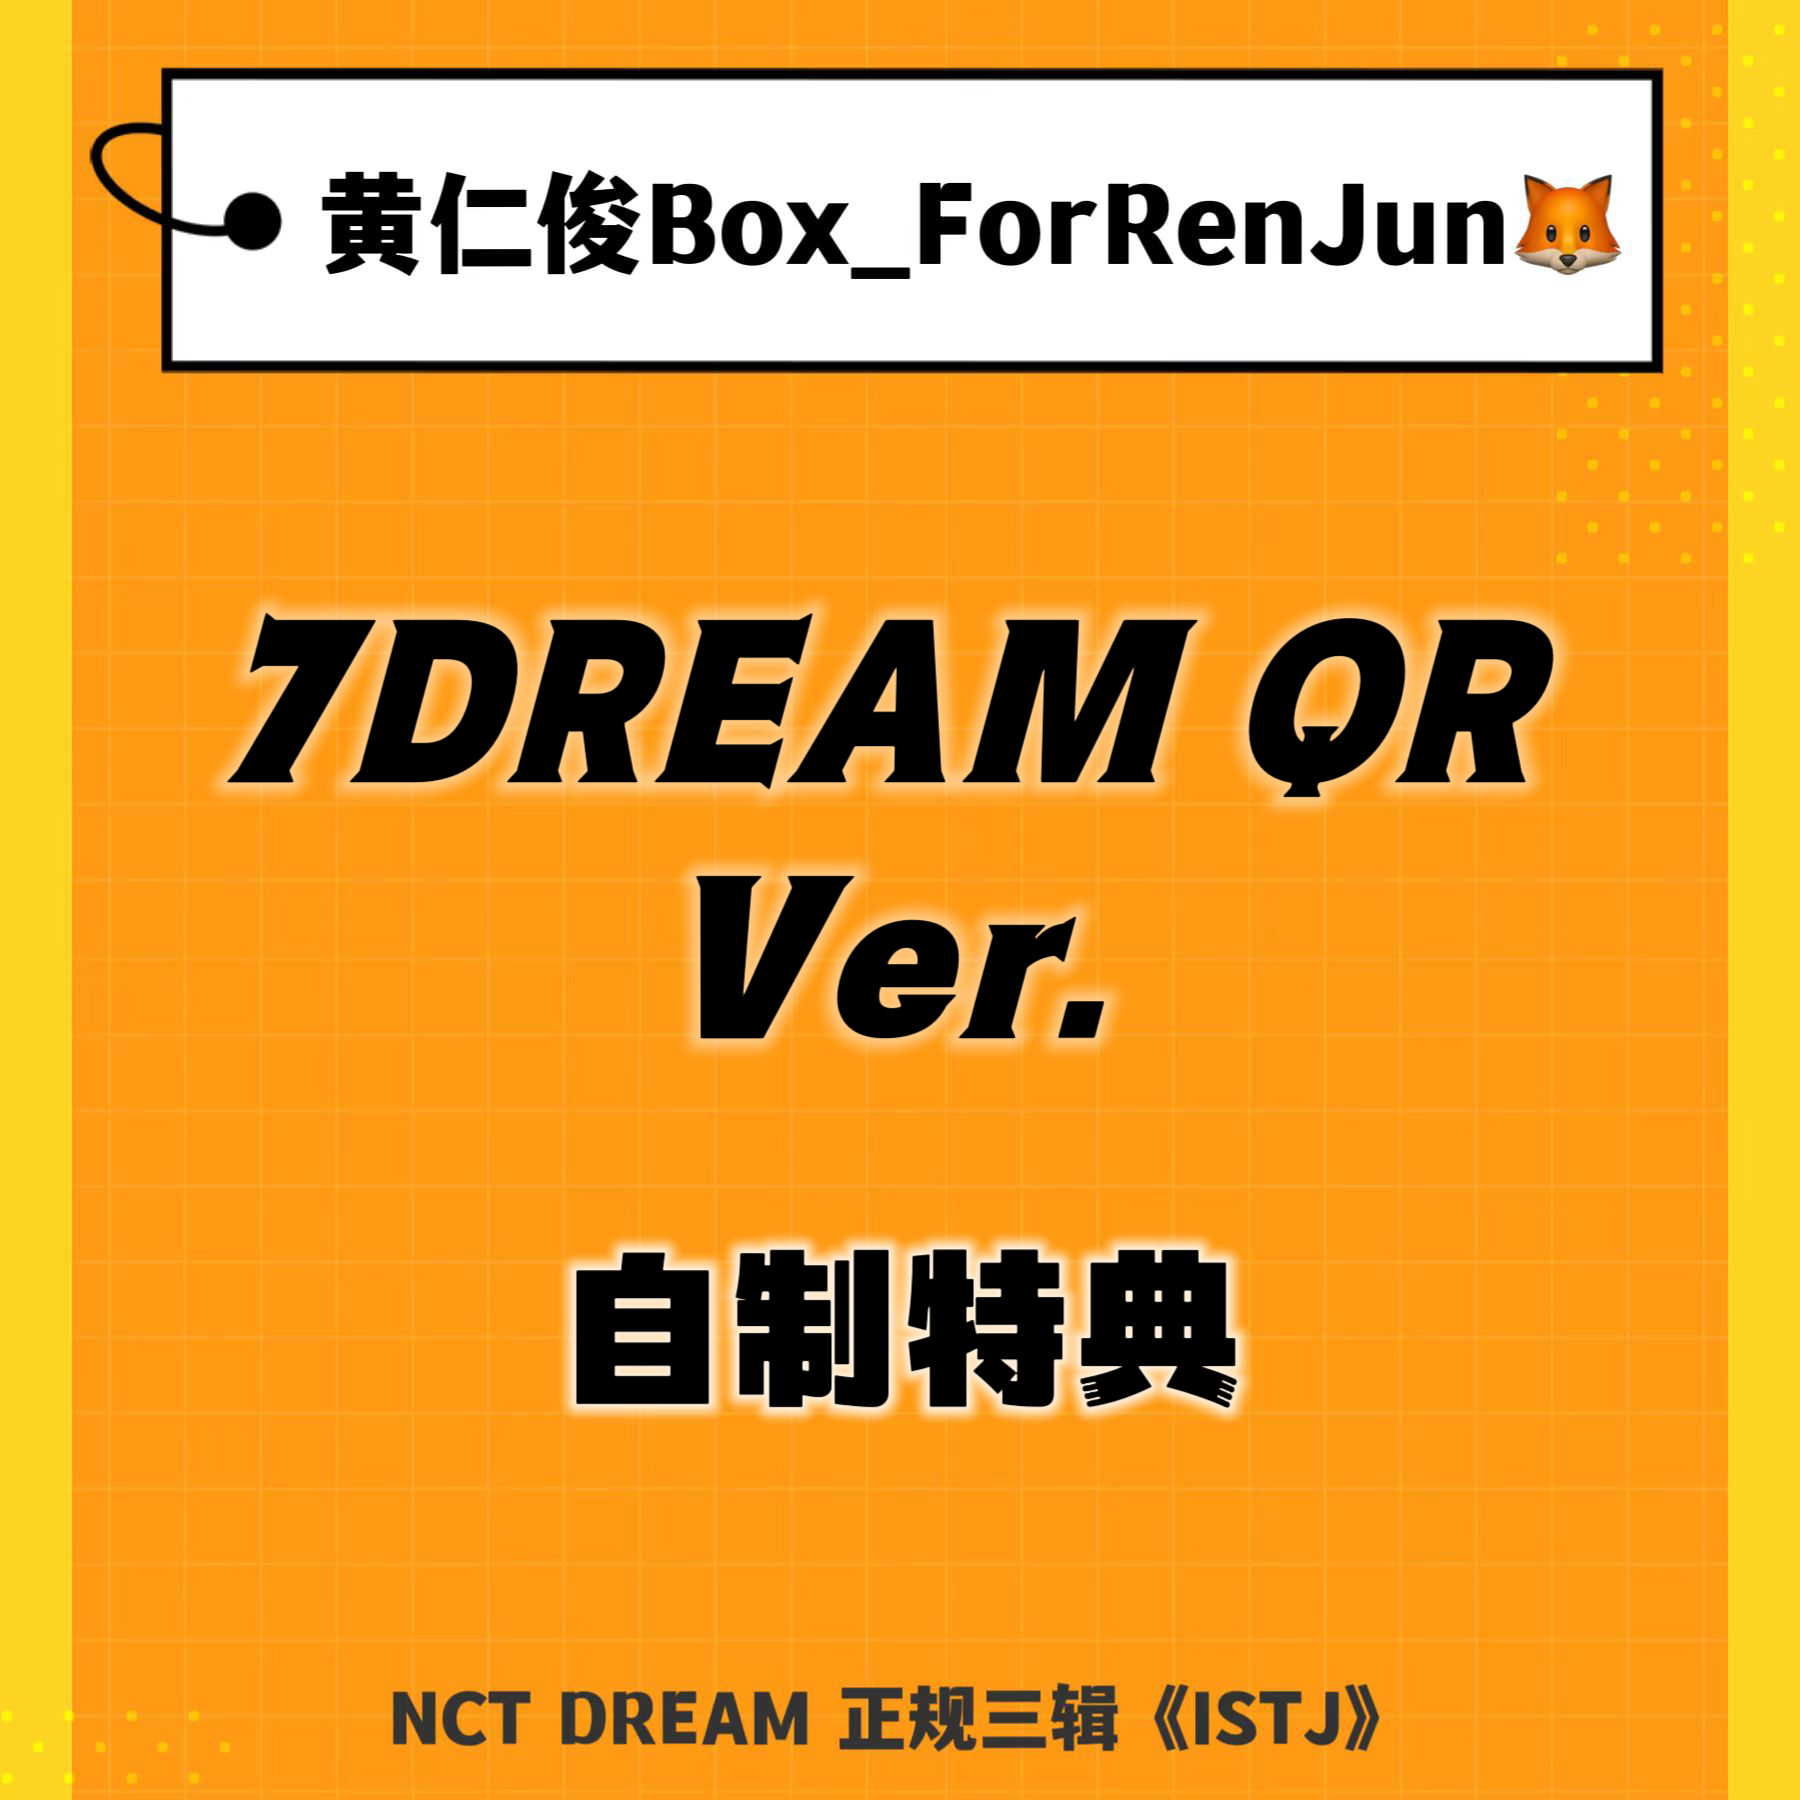 [补款 裸专] (*需备注微店手机号) NCT DREAM - 正规3辑 [ISTJ] (7DREAM QR Ver.) (Smart Album) (随机版本)_黄仁俊吧RenJunBar